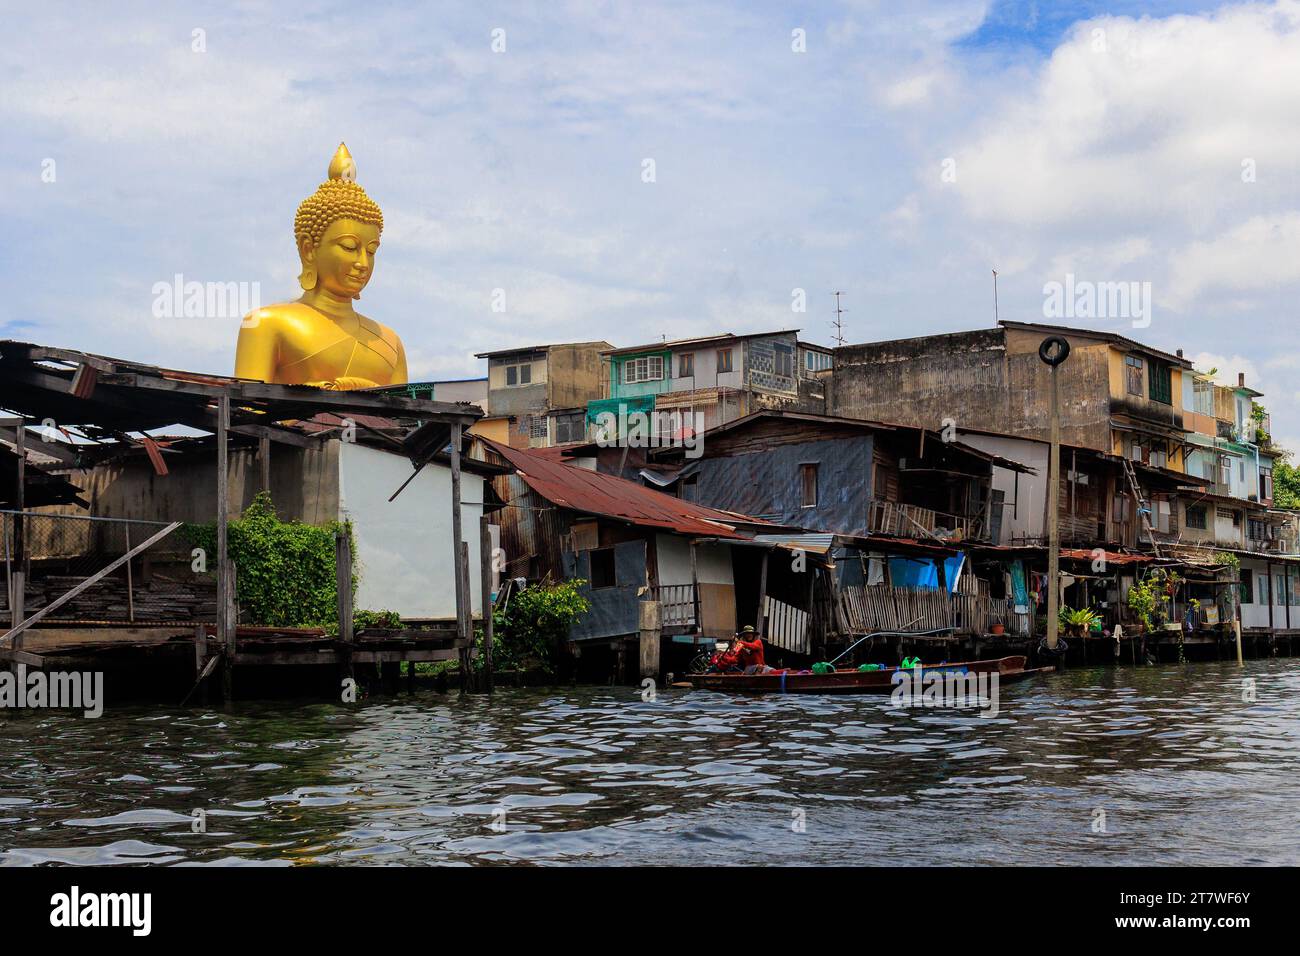 La statua gigante del Buddha Dhammakaya Thep Mongkol che si fonde dalle vecchie case di legno di Bangkok Foto Stock